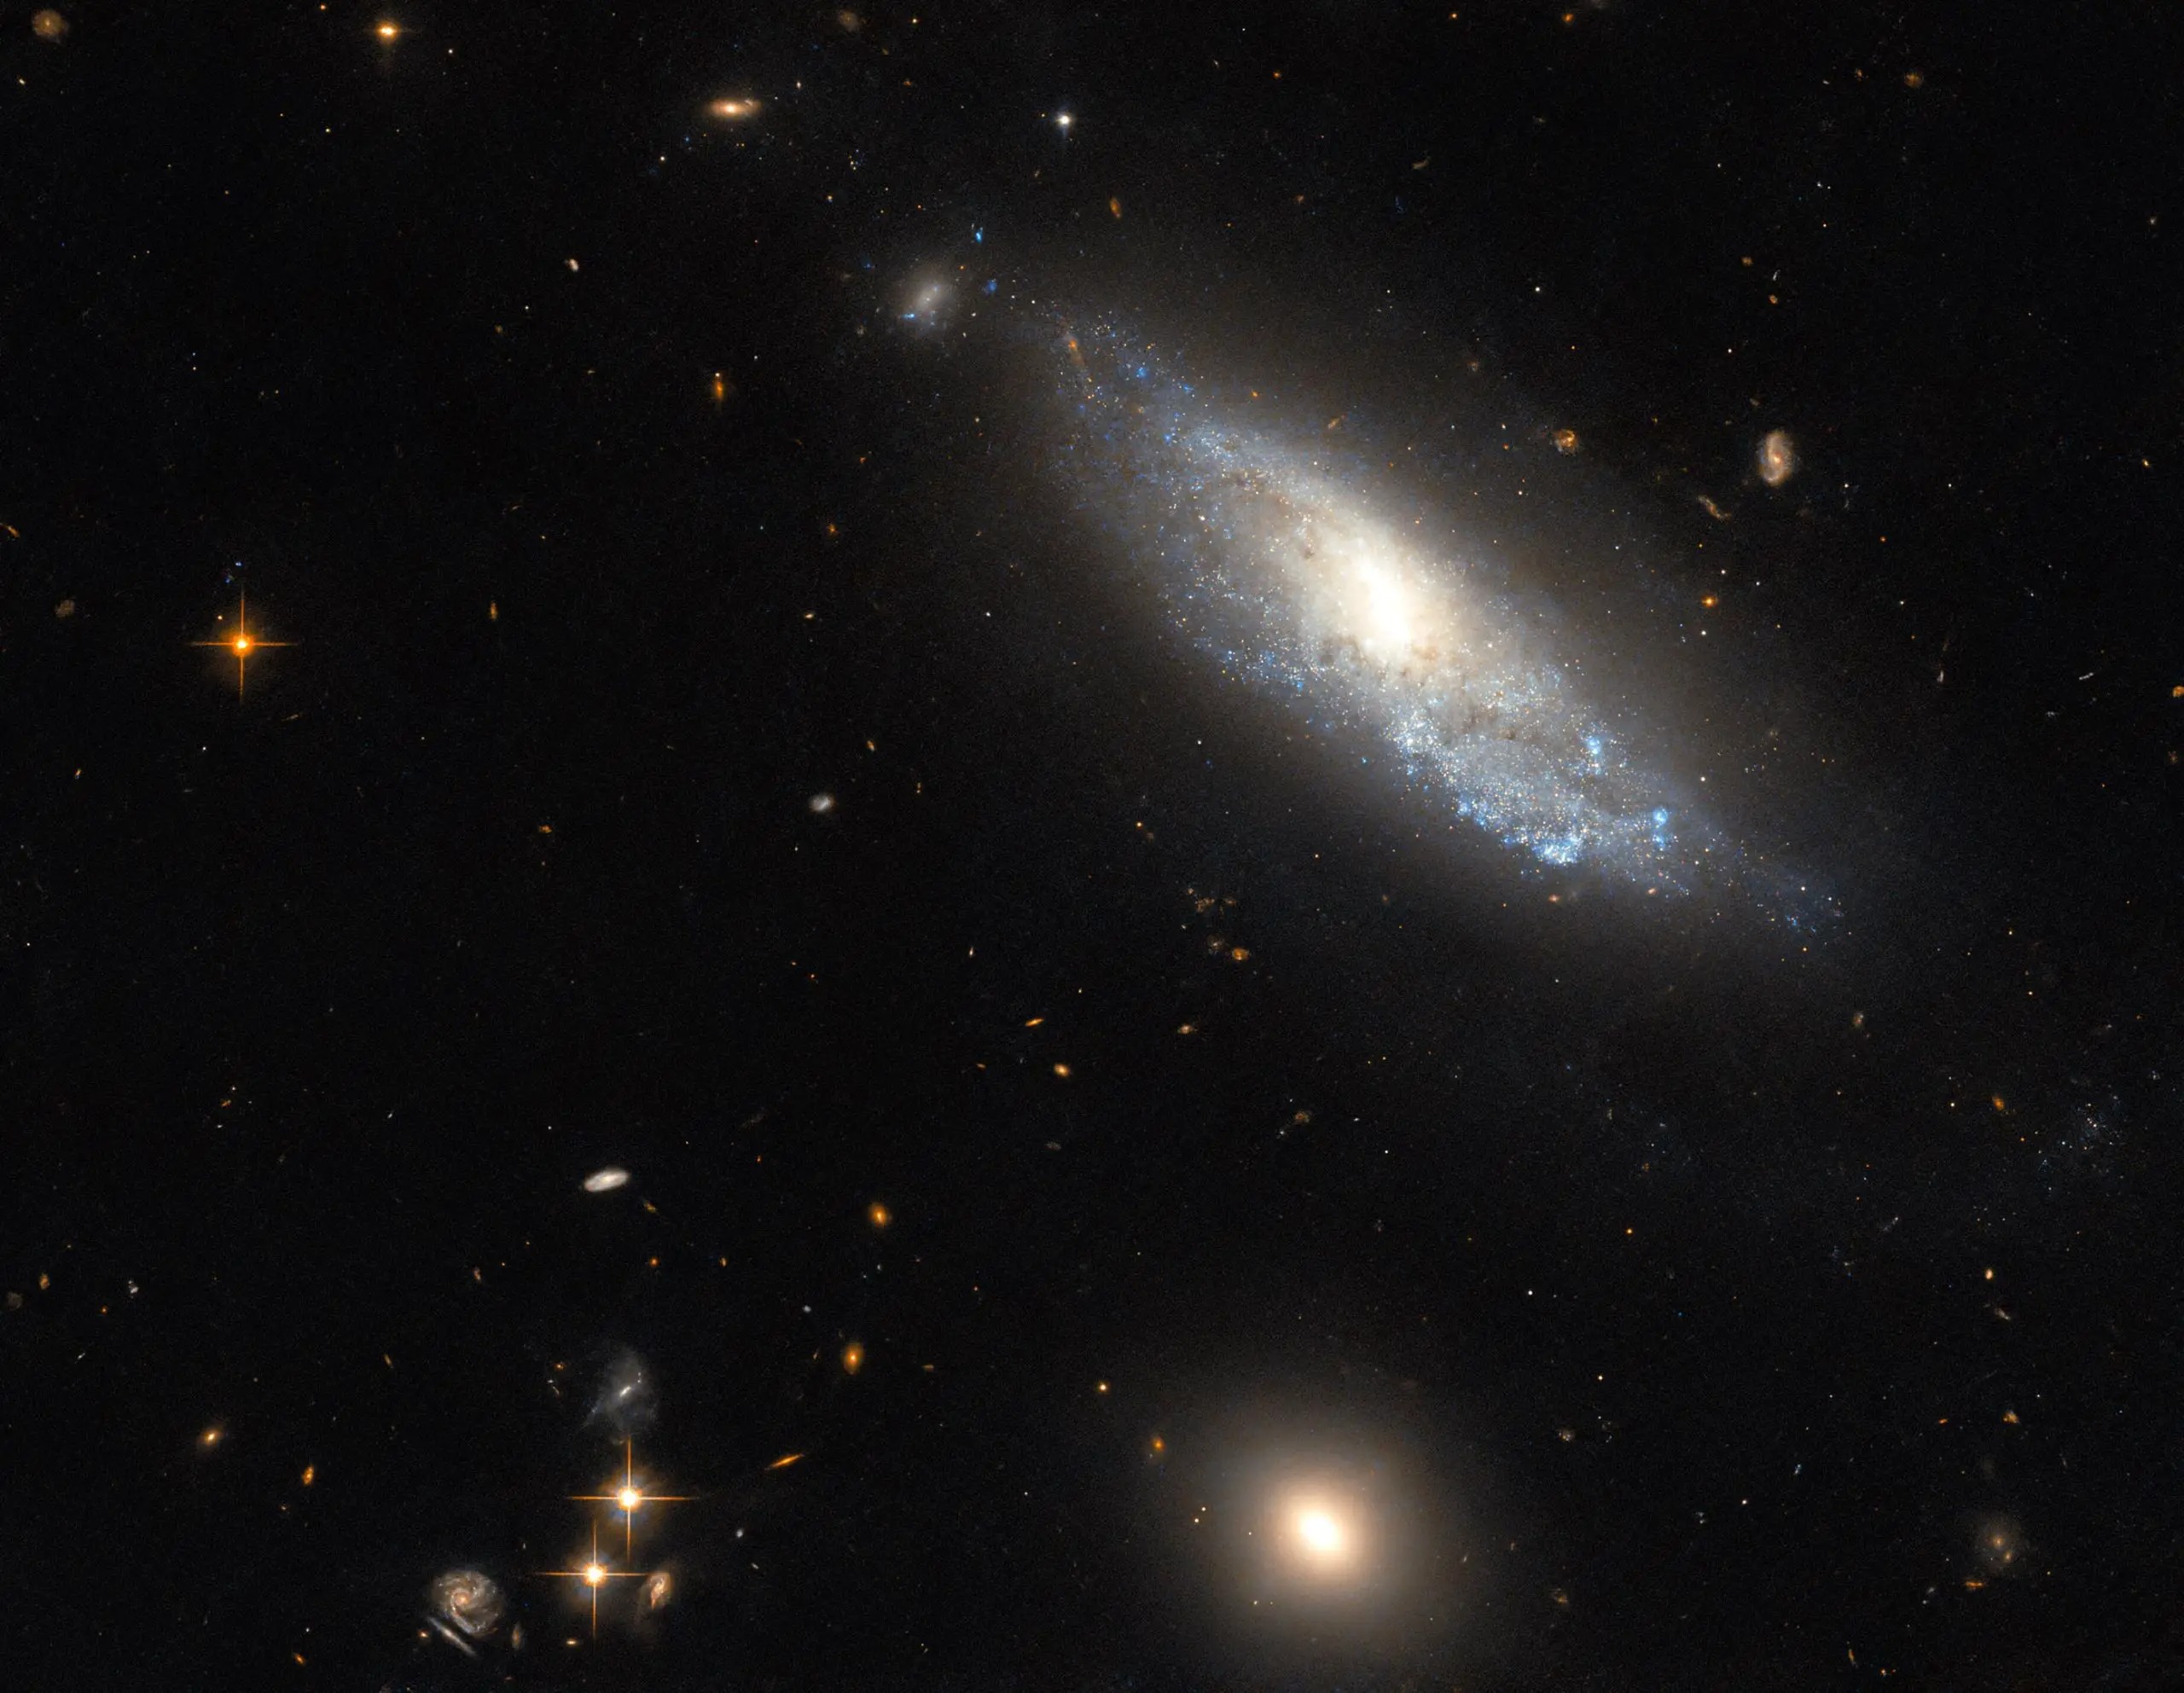 Космический телескоп Hubble, исследуя происхождение сверхновых типа II, сделал это изображение спиральной галактики NGC 298